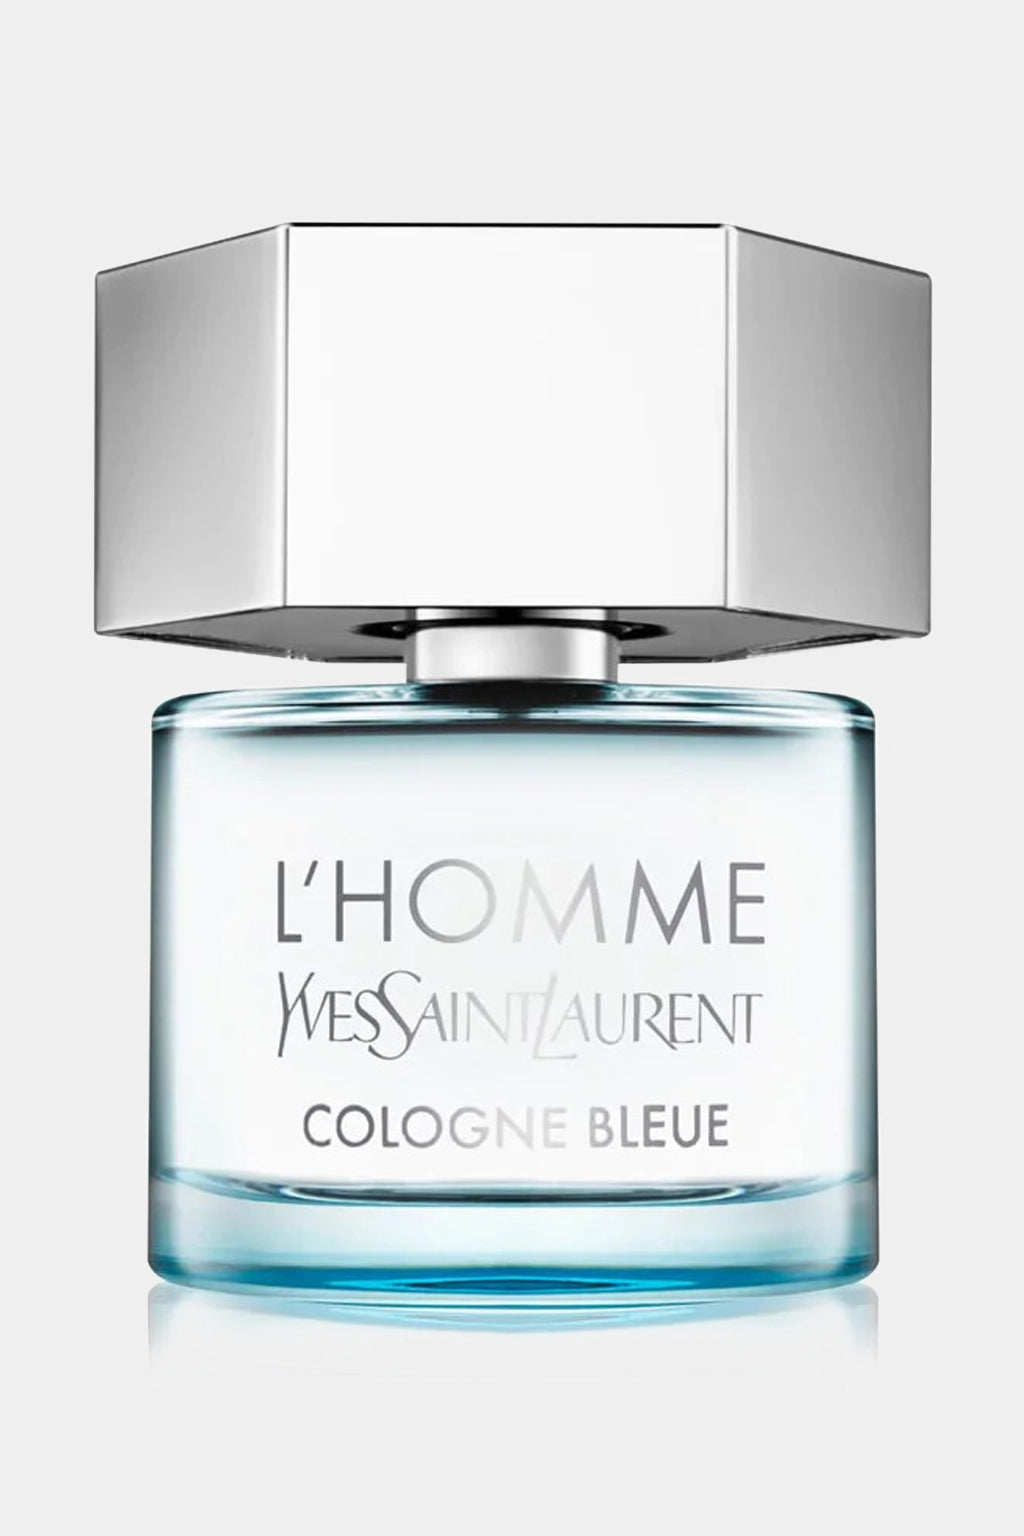 Yves Saint Laurent - L'Homme Cologne Bleue Eau de Toilette